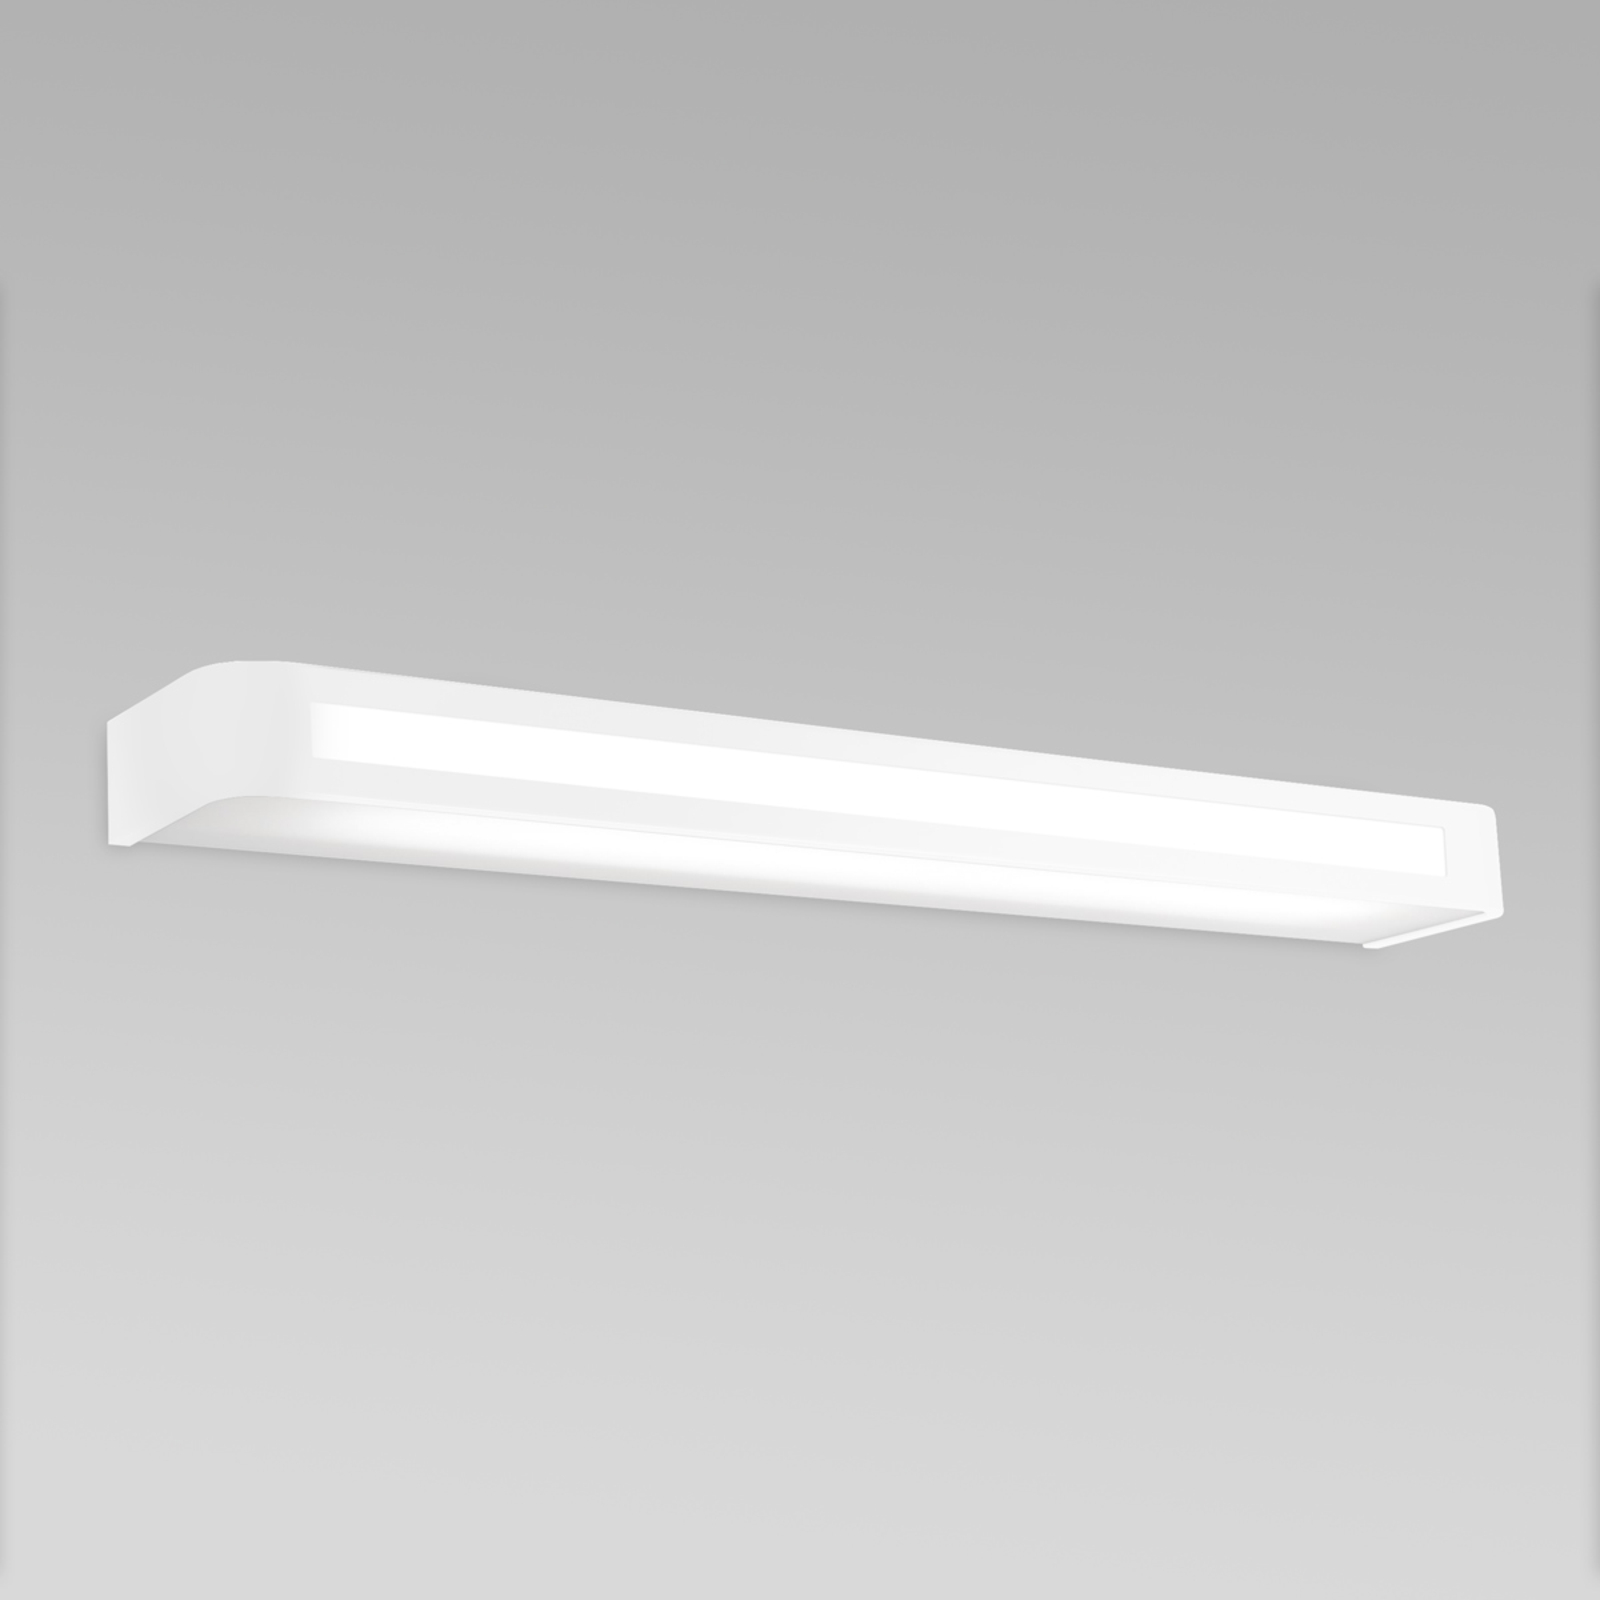 Tijdloze LED wandlamp Arcos, IP20 60 cm, wit